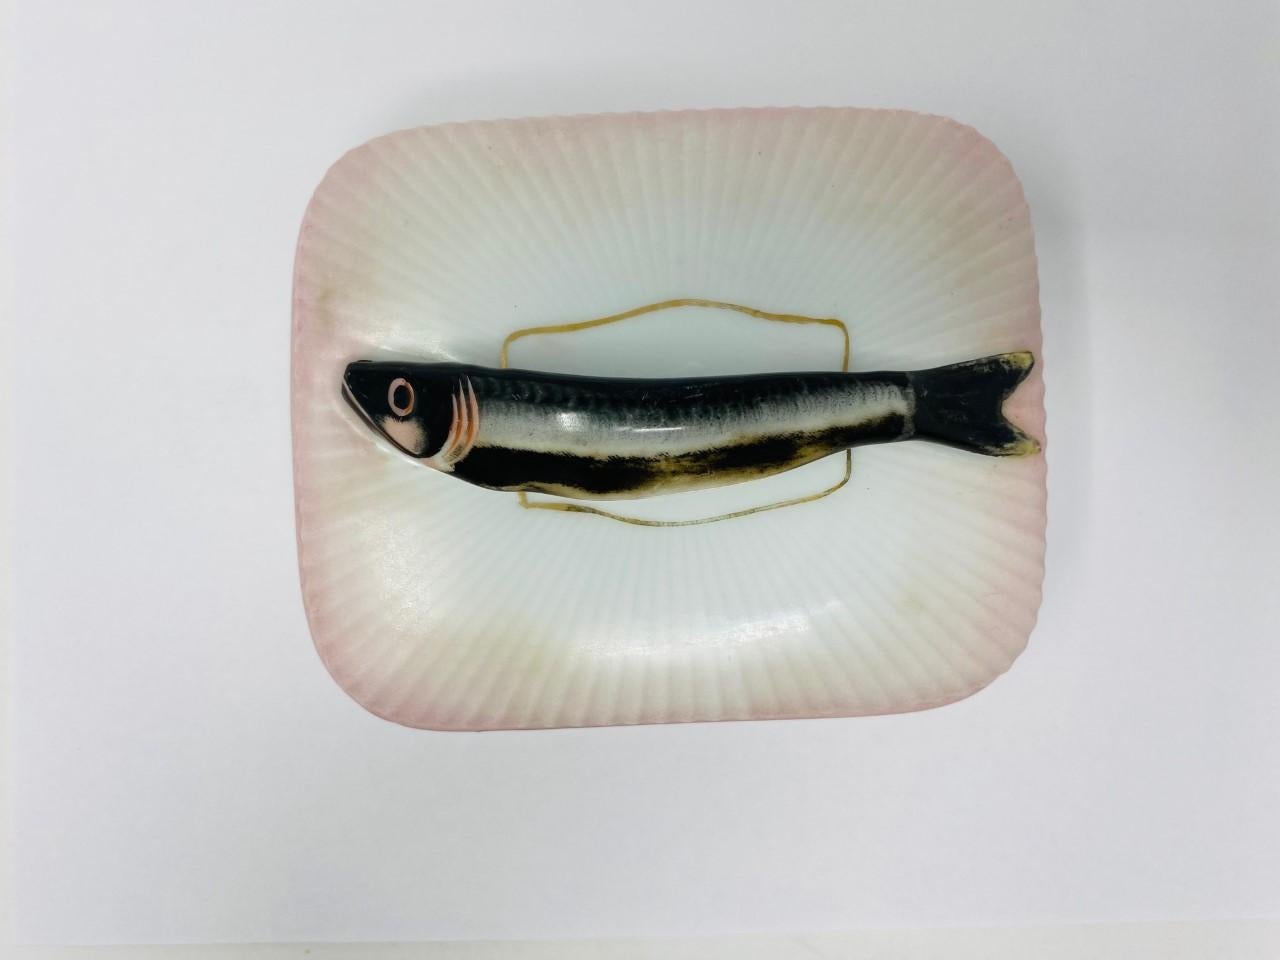 Rare boîte à couvercle en porcelaine autrichienne de l'époque victorienne à poignée en forme de sardine.
La boîte a un motif nervuré, tout blanc, avec de l'or autour de la base et du couvercle.
L'anse est une sardine et repose sur un couvercle